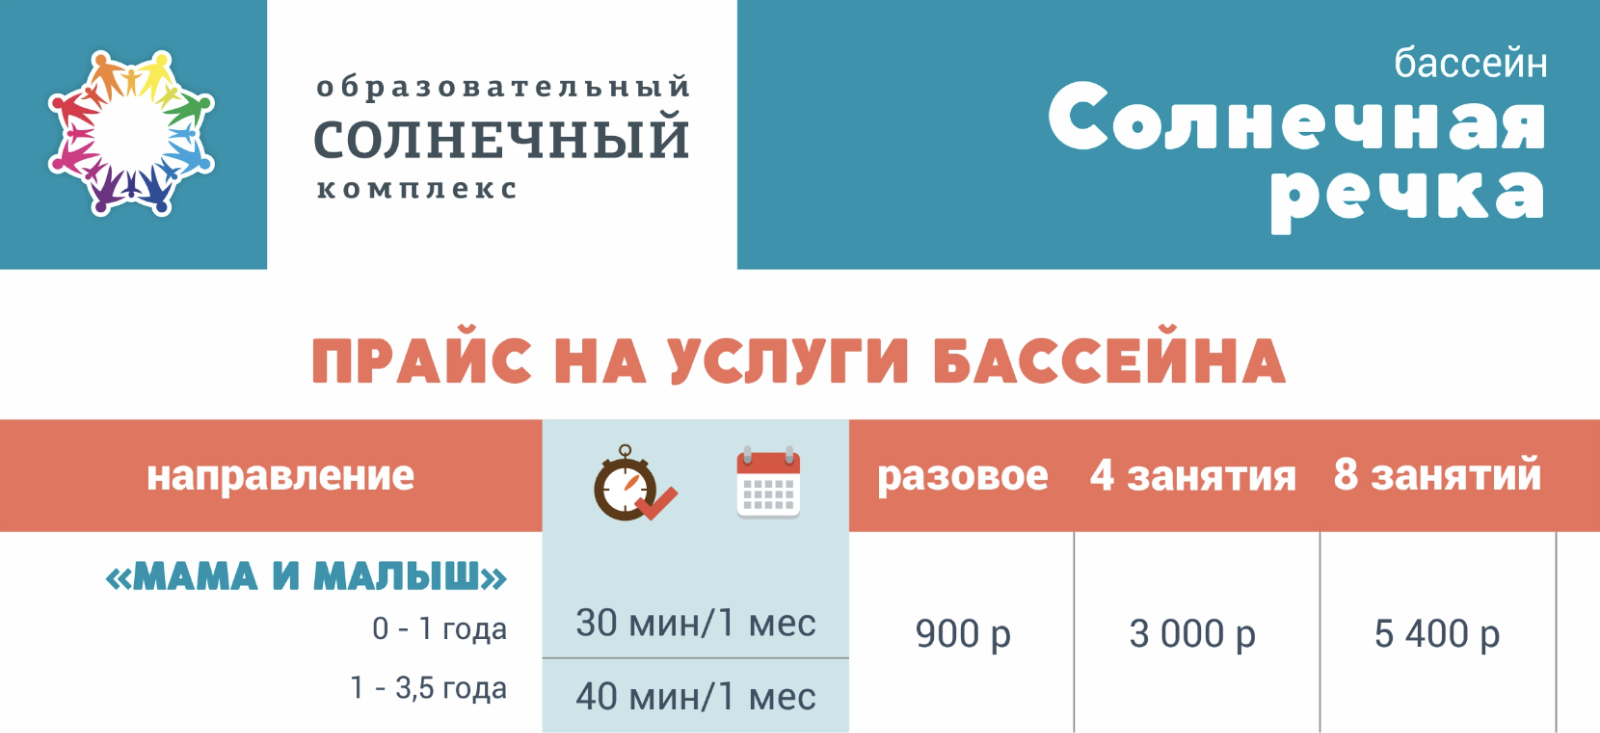 Занятия в группах стоят дешевле. Например, как в бассейне «Солнечная речка». Источник: colnkrug.ru